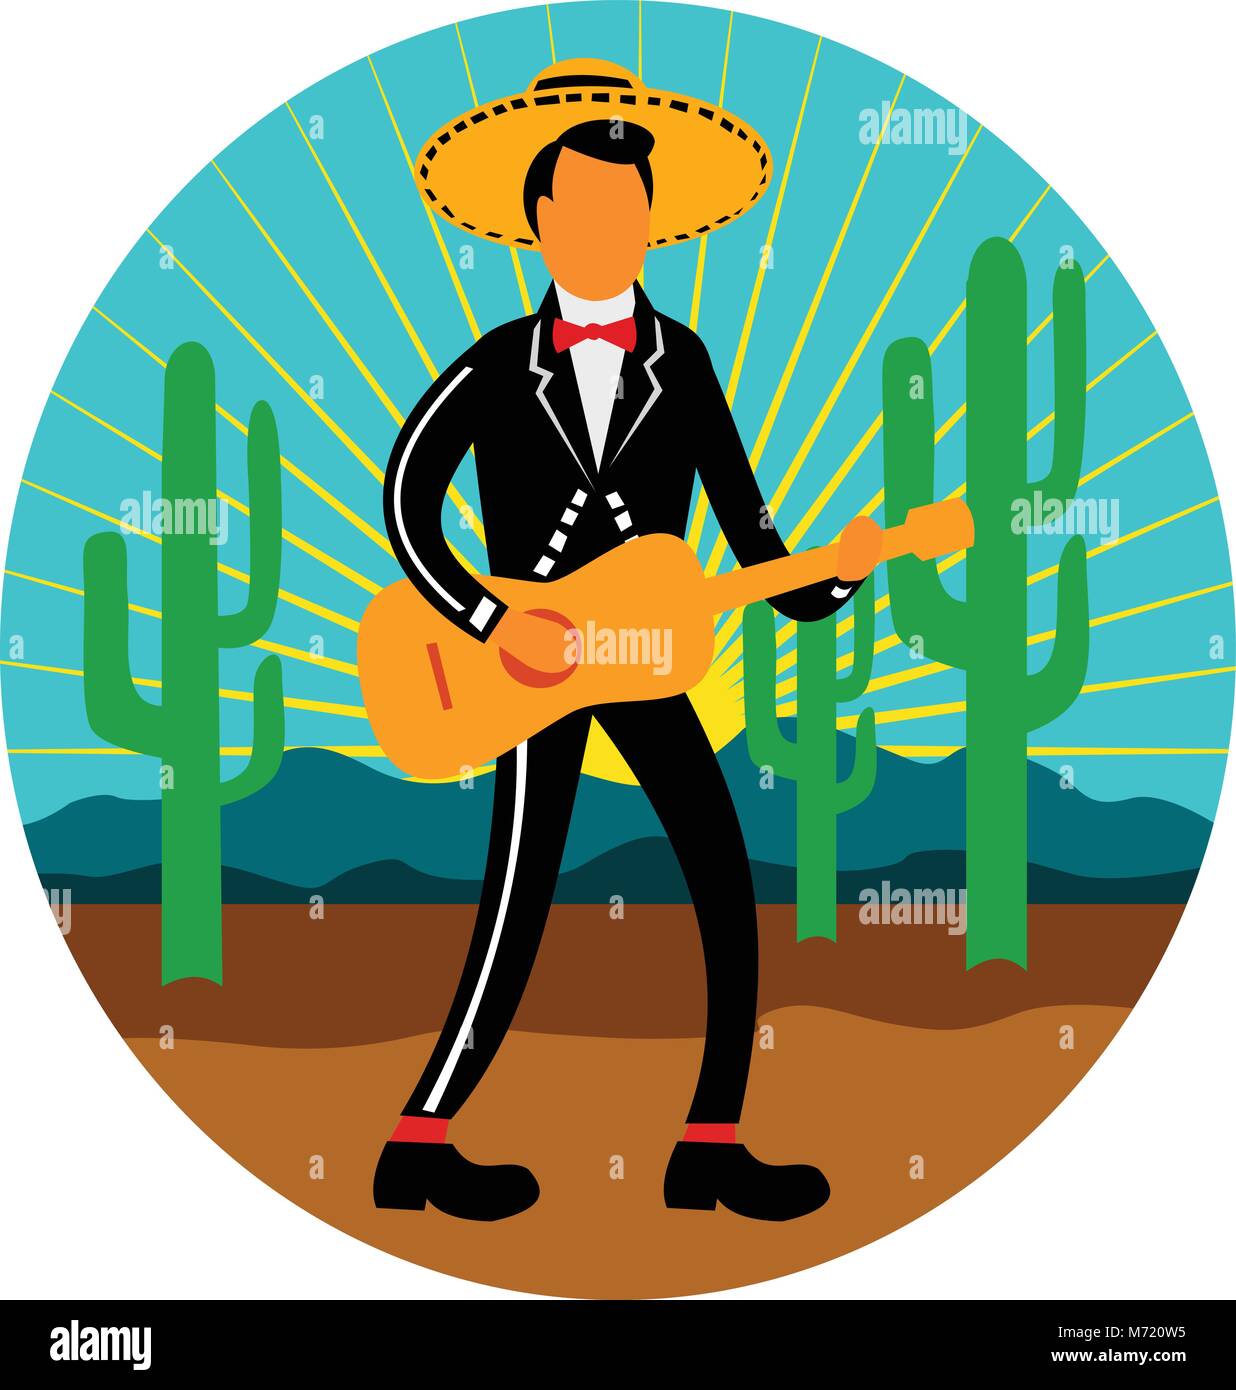 Style rétro icône illustration d'un mariachi mexicain jouant, de gratter la guitare sombrero wearimng dans le désert avec saguaro cactus et les montagnes se Illustration de Vecteur